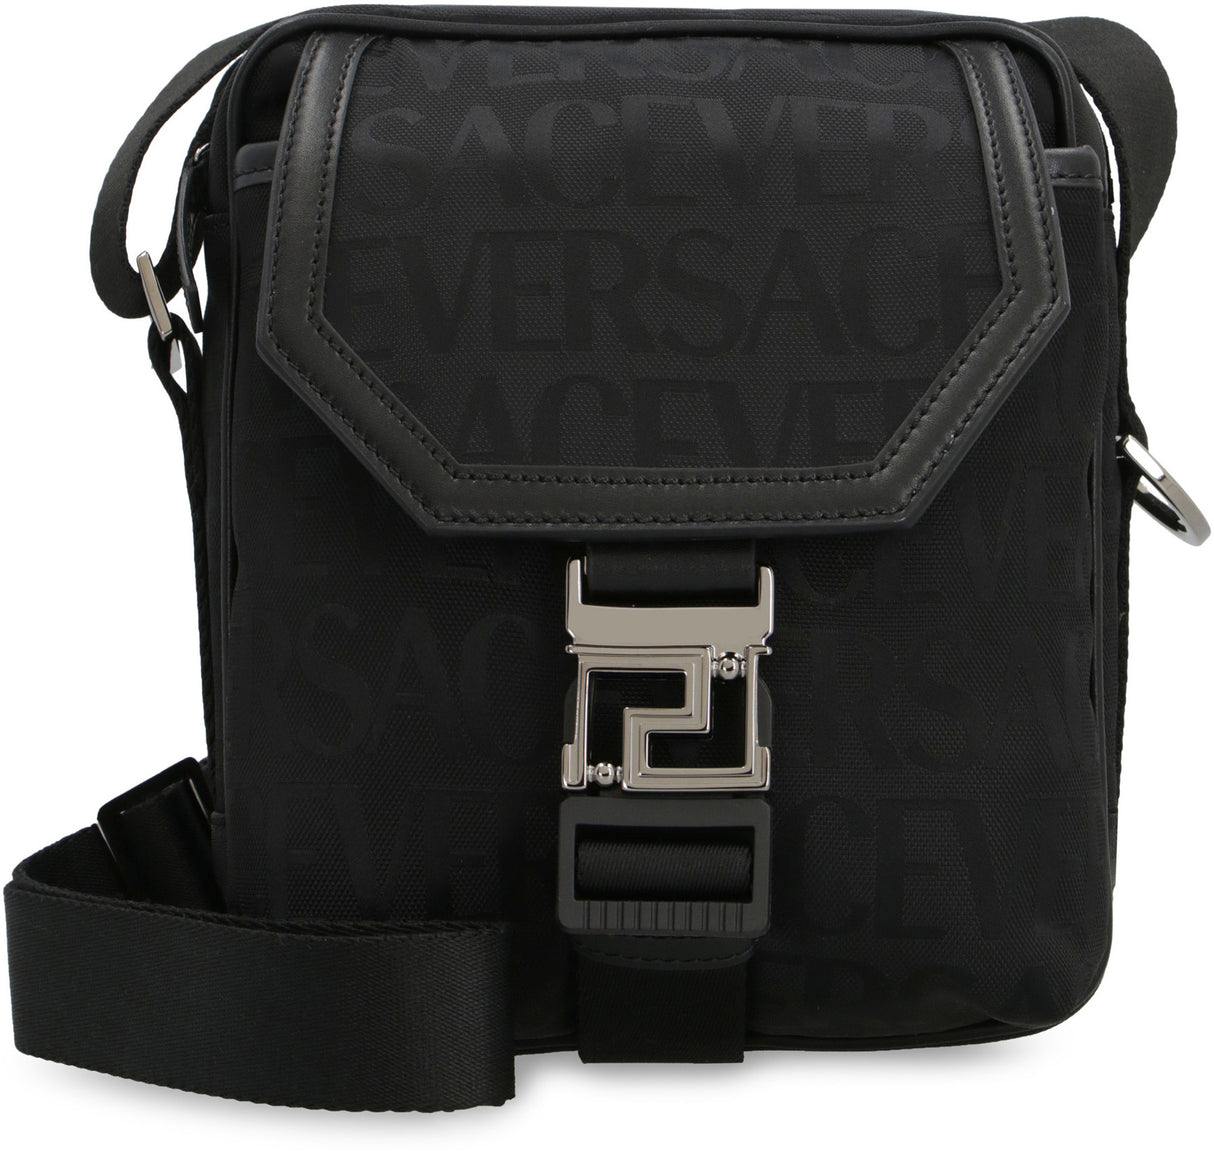 Túi xách đeo vai Versatile All-Over Logo in hình khắp thân với da cổ